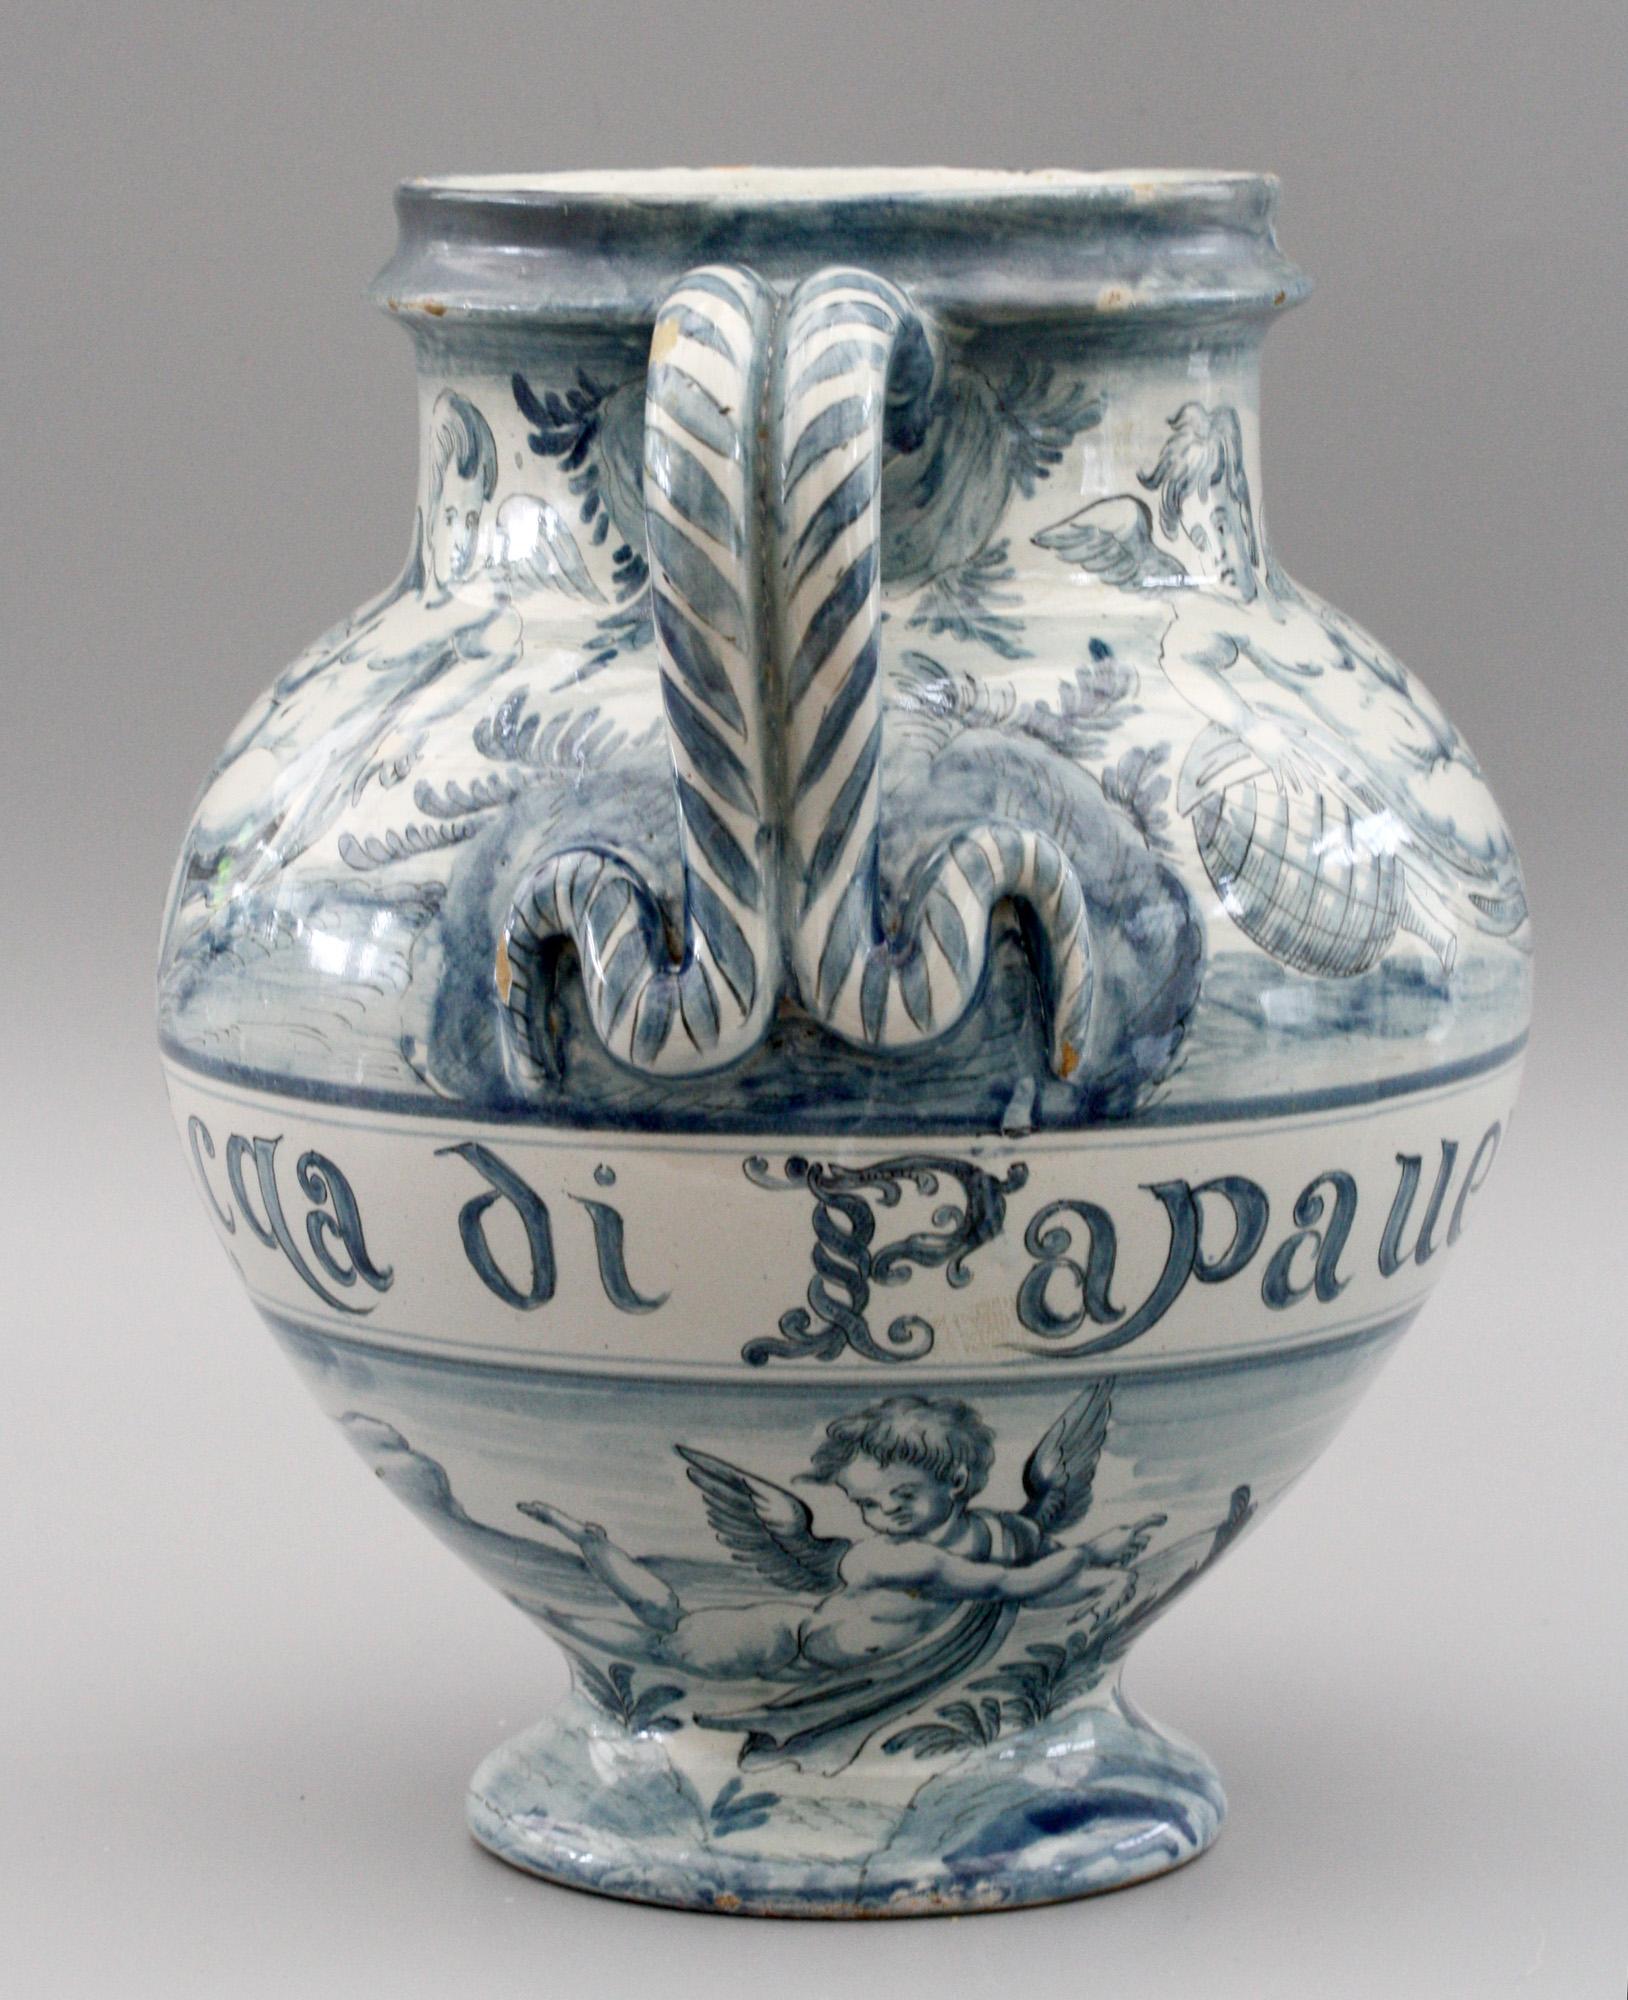 Hand-Painted Cantagalli Italian Maiolica Acqa di Papueri Drug Jar, 19th Century